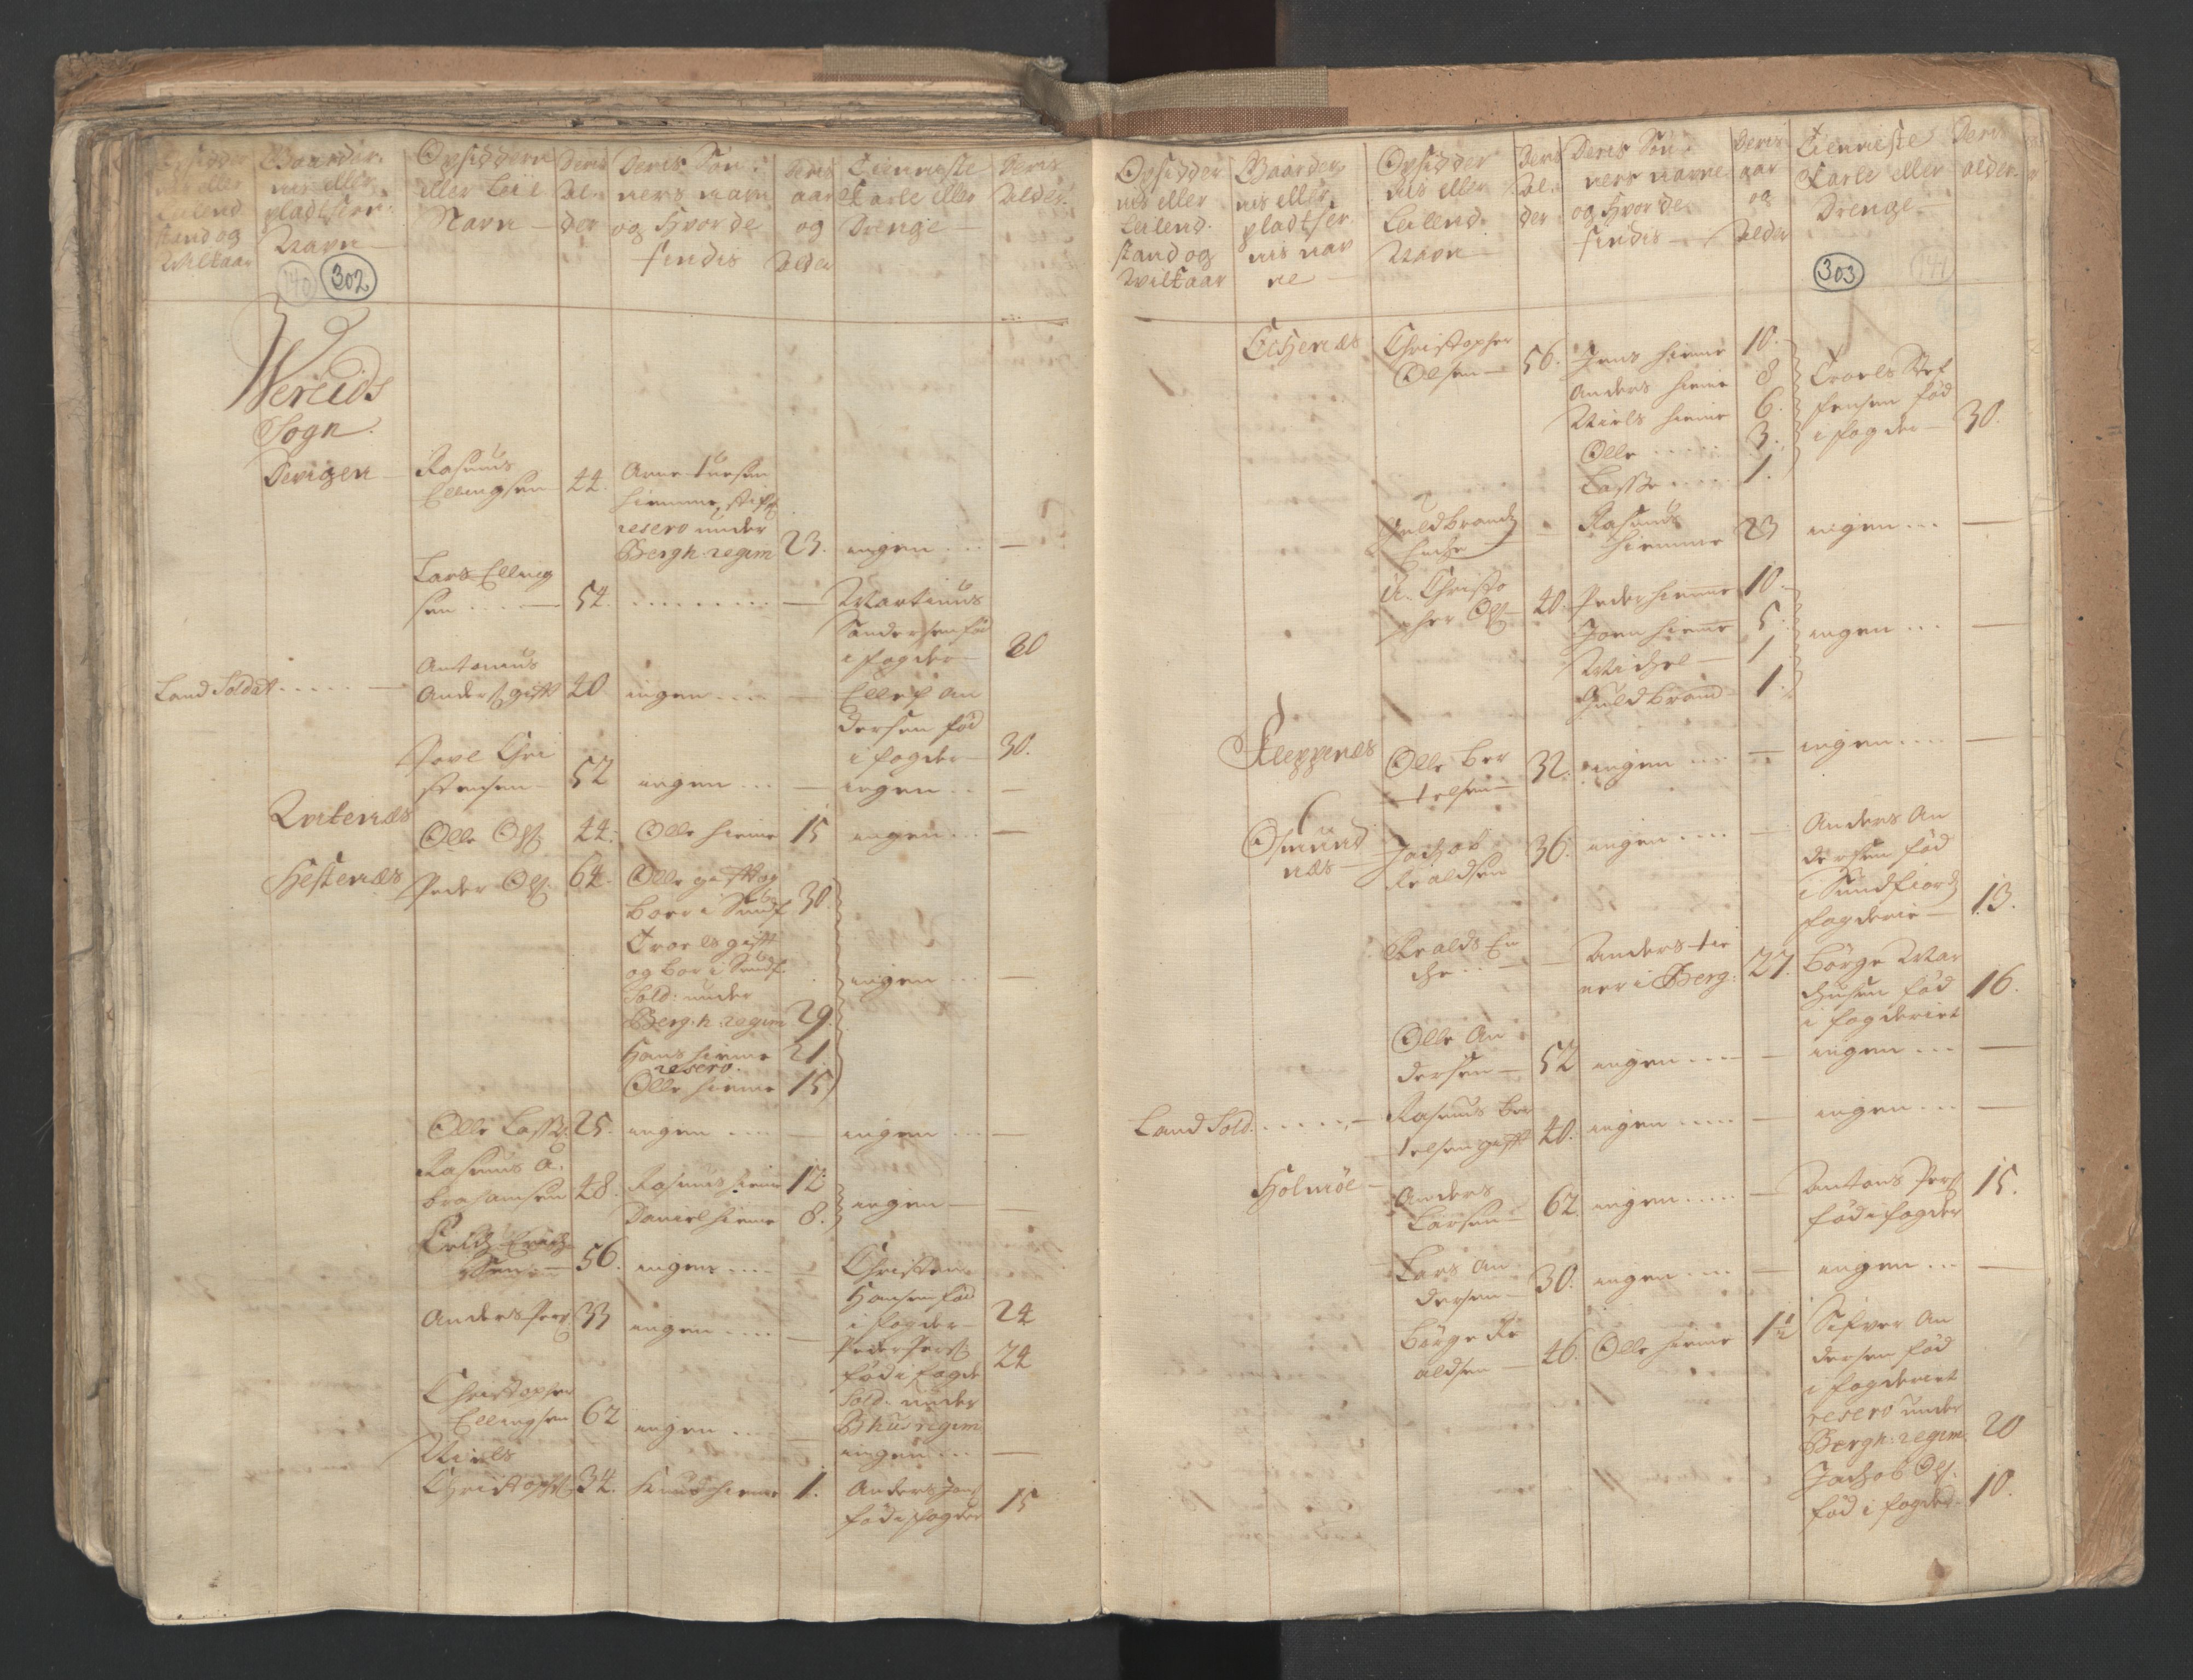 RA, Census (manntall) 1701, no. 9: Sunnfjord fogderi, Nordfjord fogderi and Svanø birk, 1701, p. 302-303